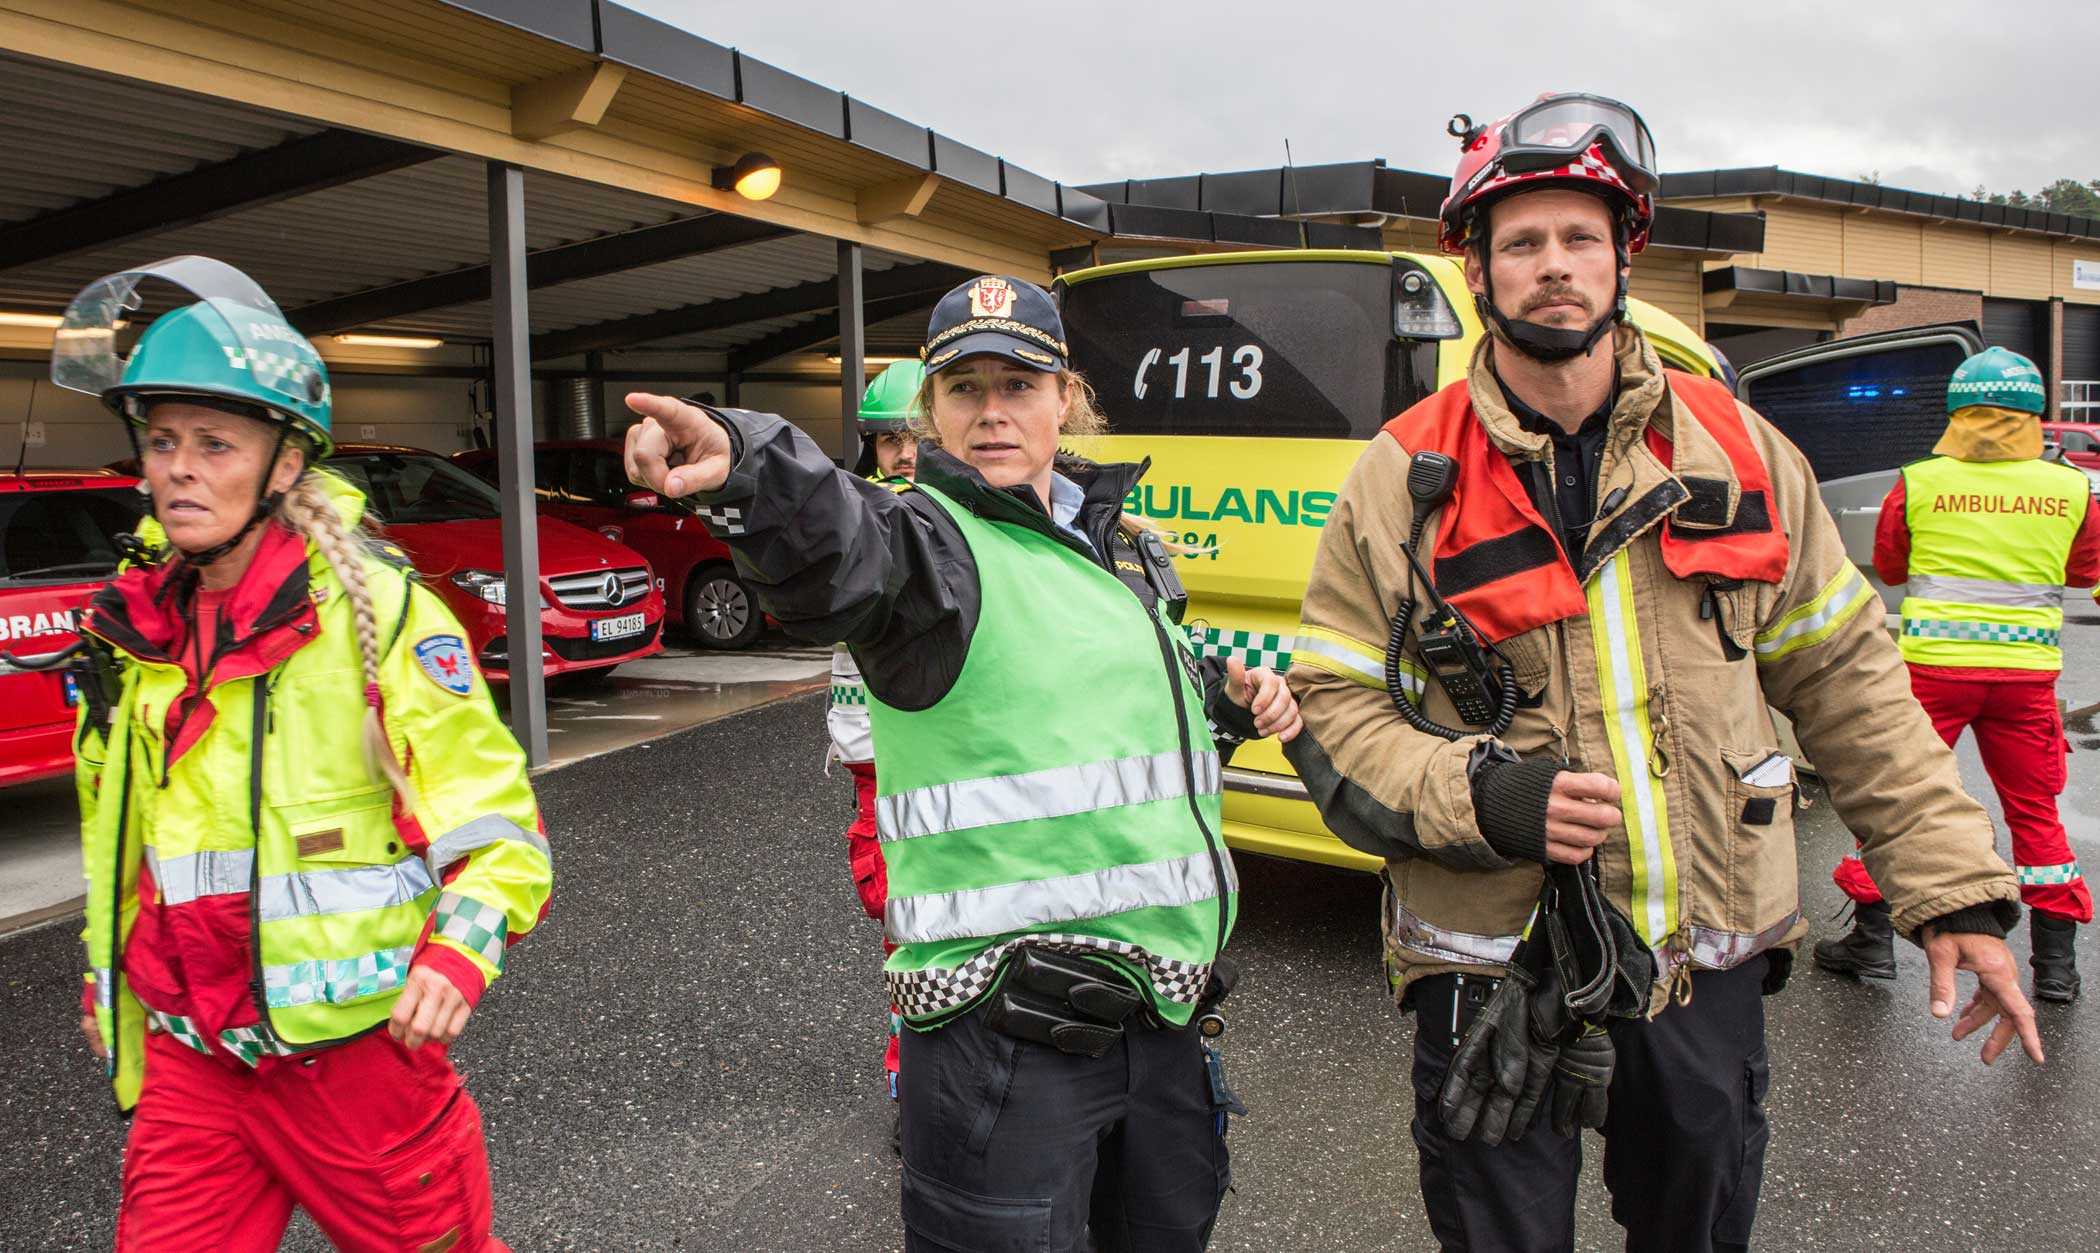 For at redningskjeden med politi, brann og helse skal jobbe best mulig sammen på skadested, er det avgjørende at de får trene sammen. (Foto: Fredrik Naumann)